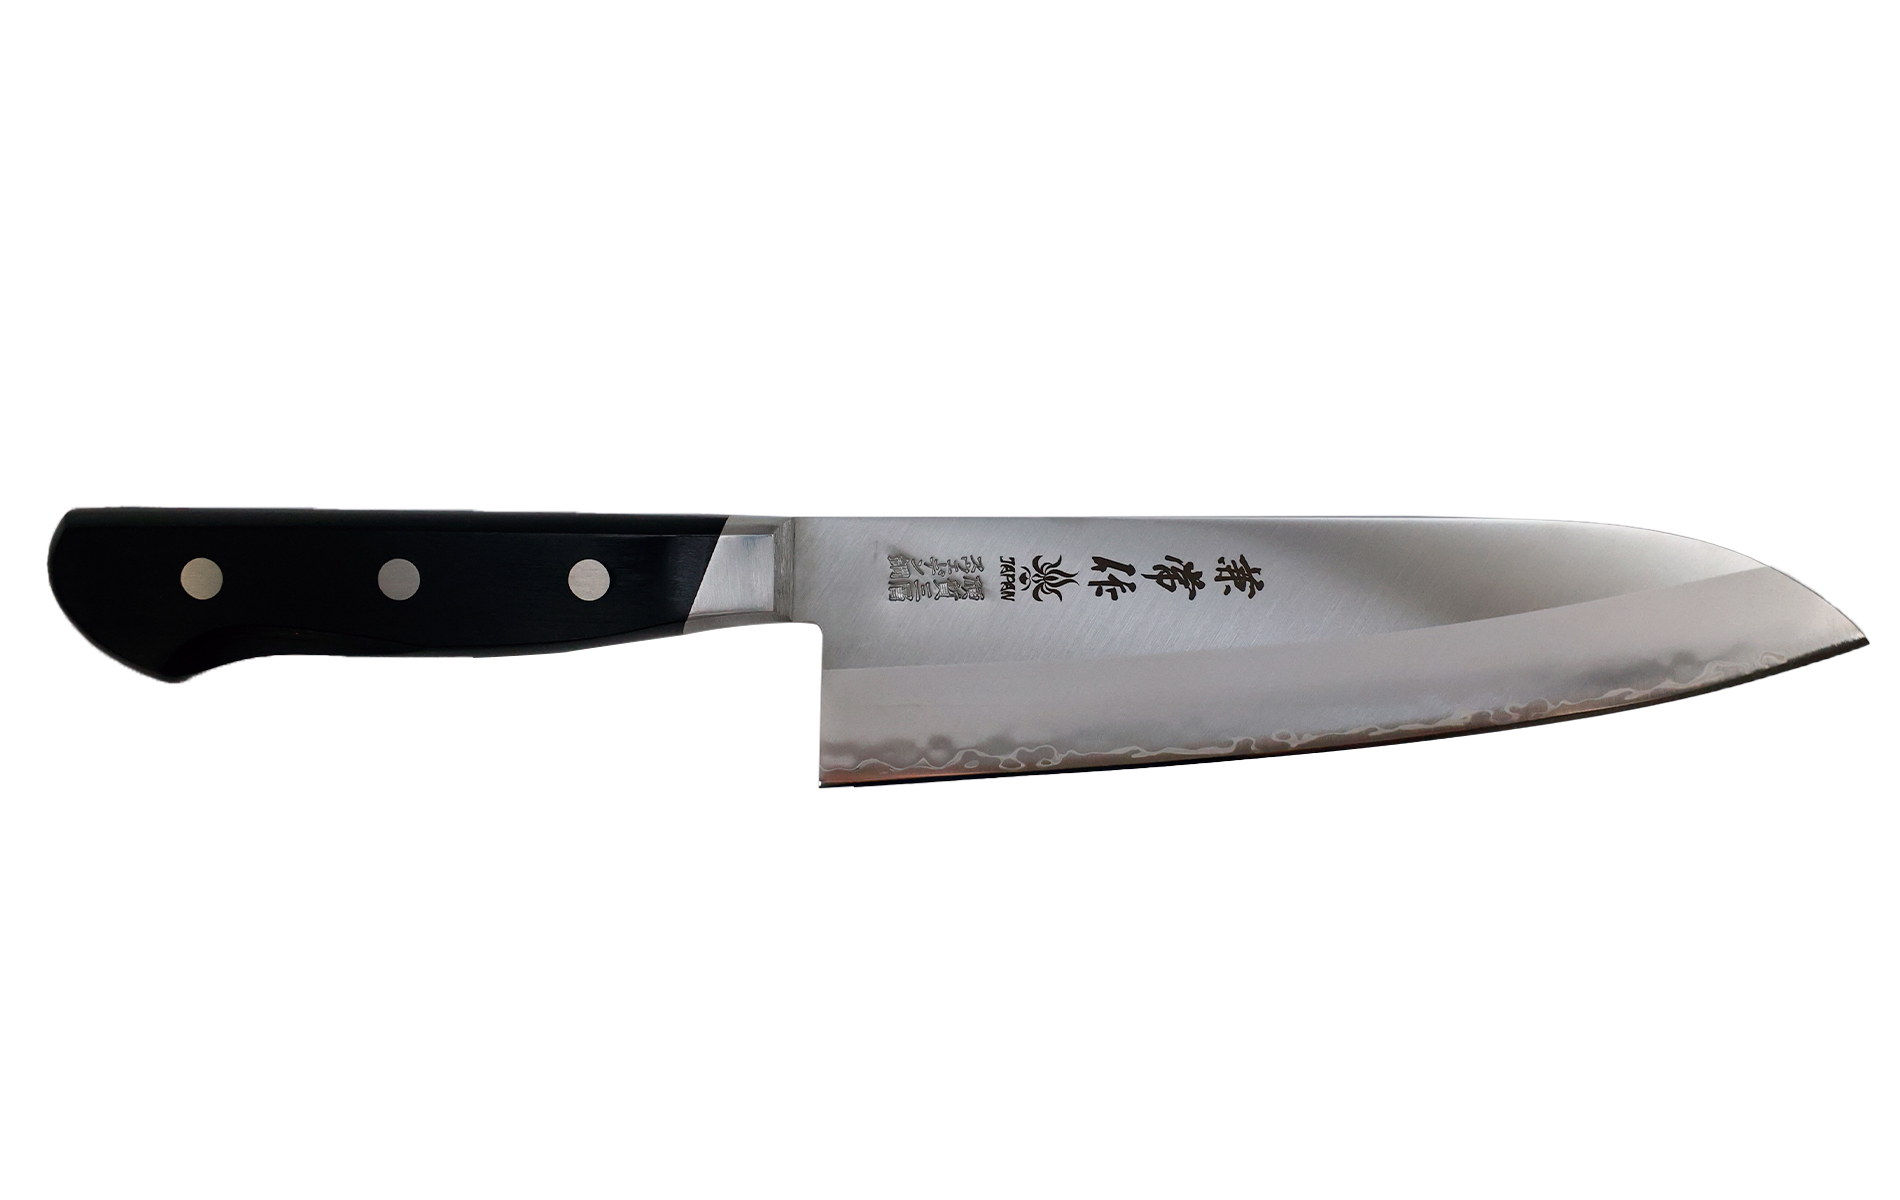 Global G-5 Couteau à légumes Japonais 18 cm